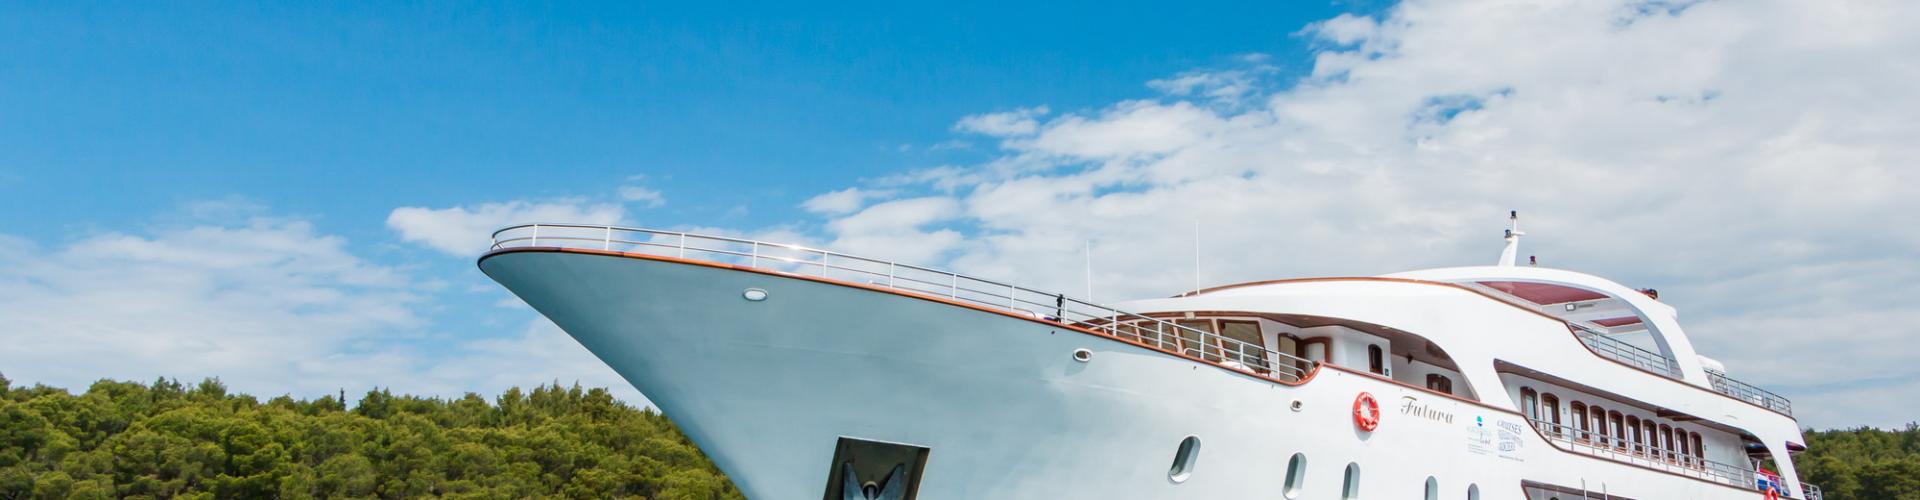 Deluxe navire de croisière MV Futura- yacht à moteur